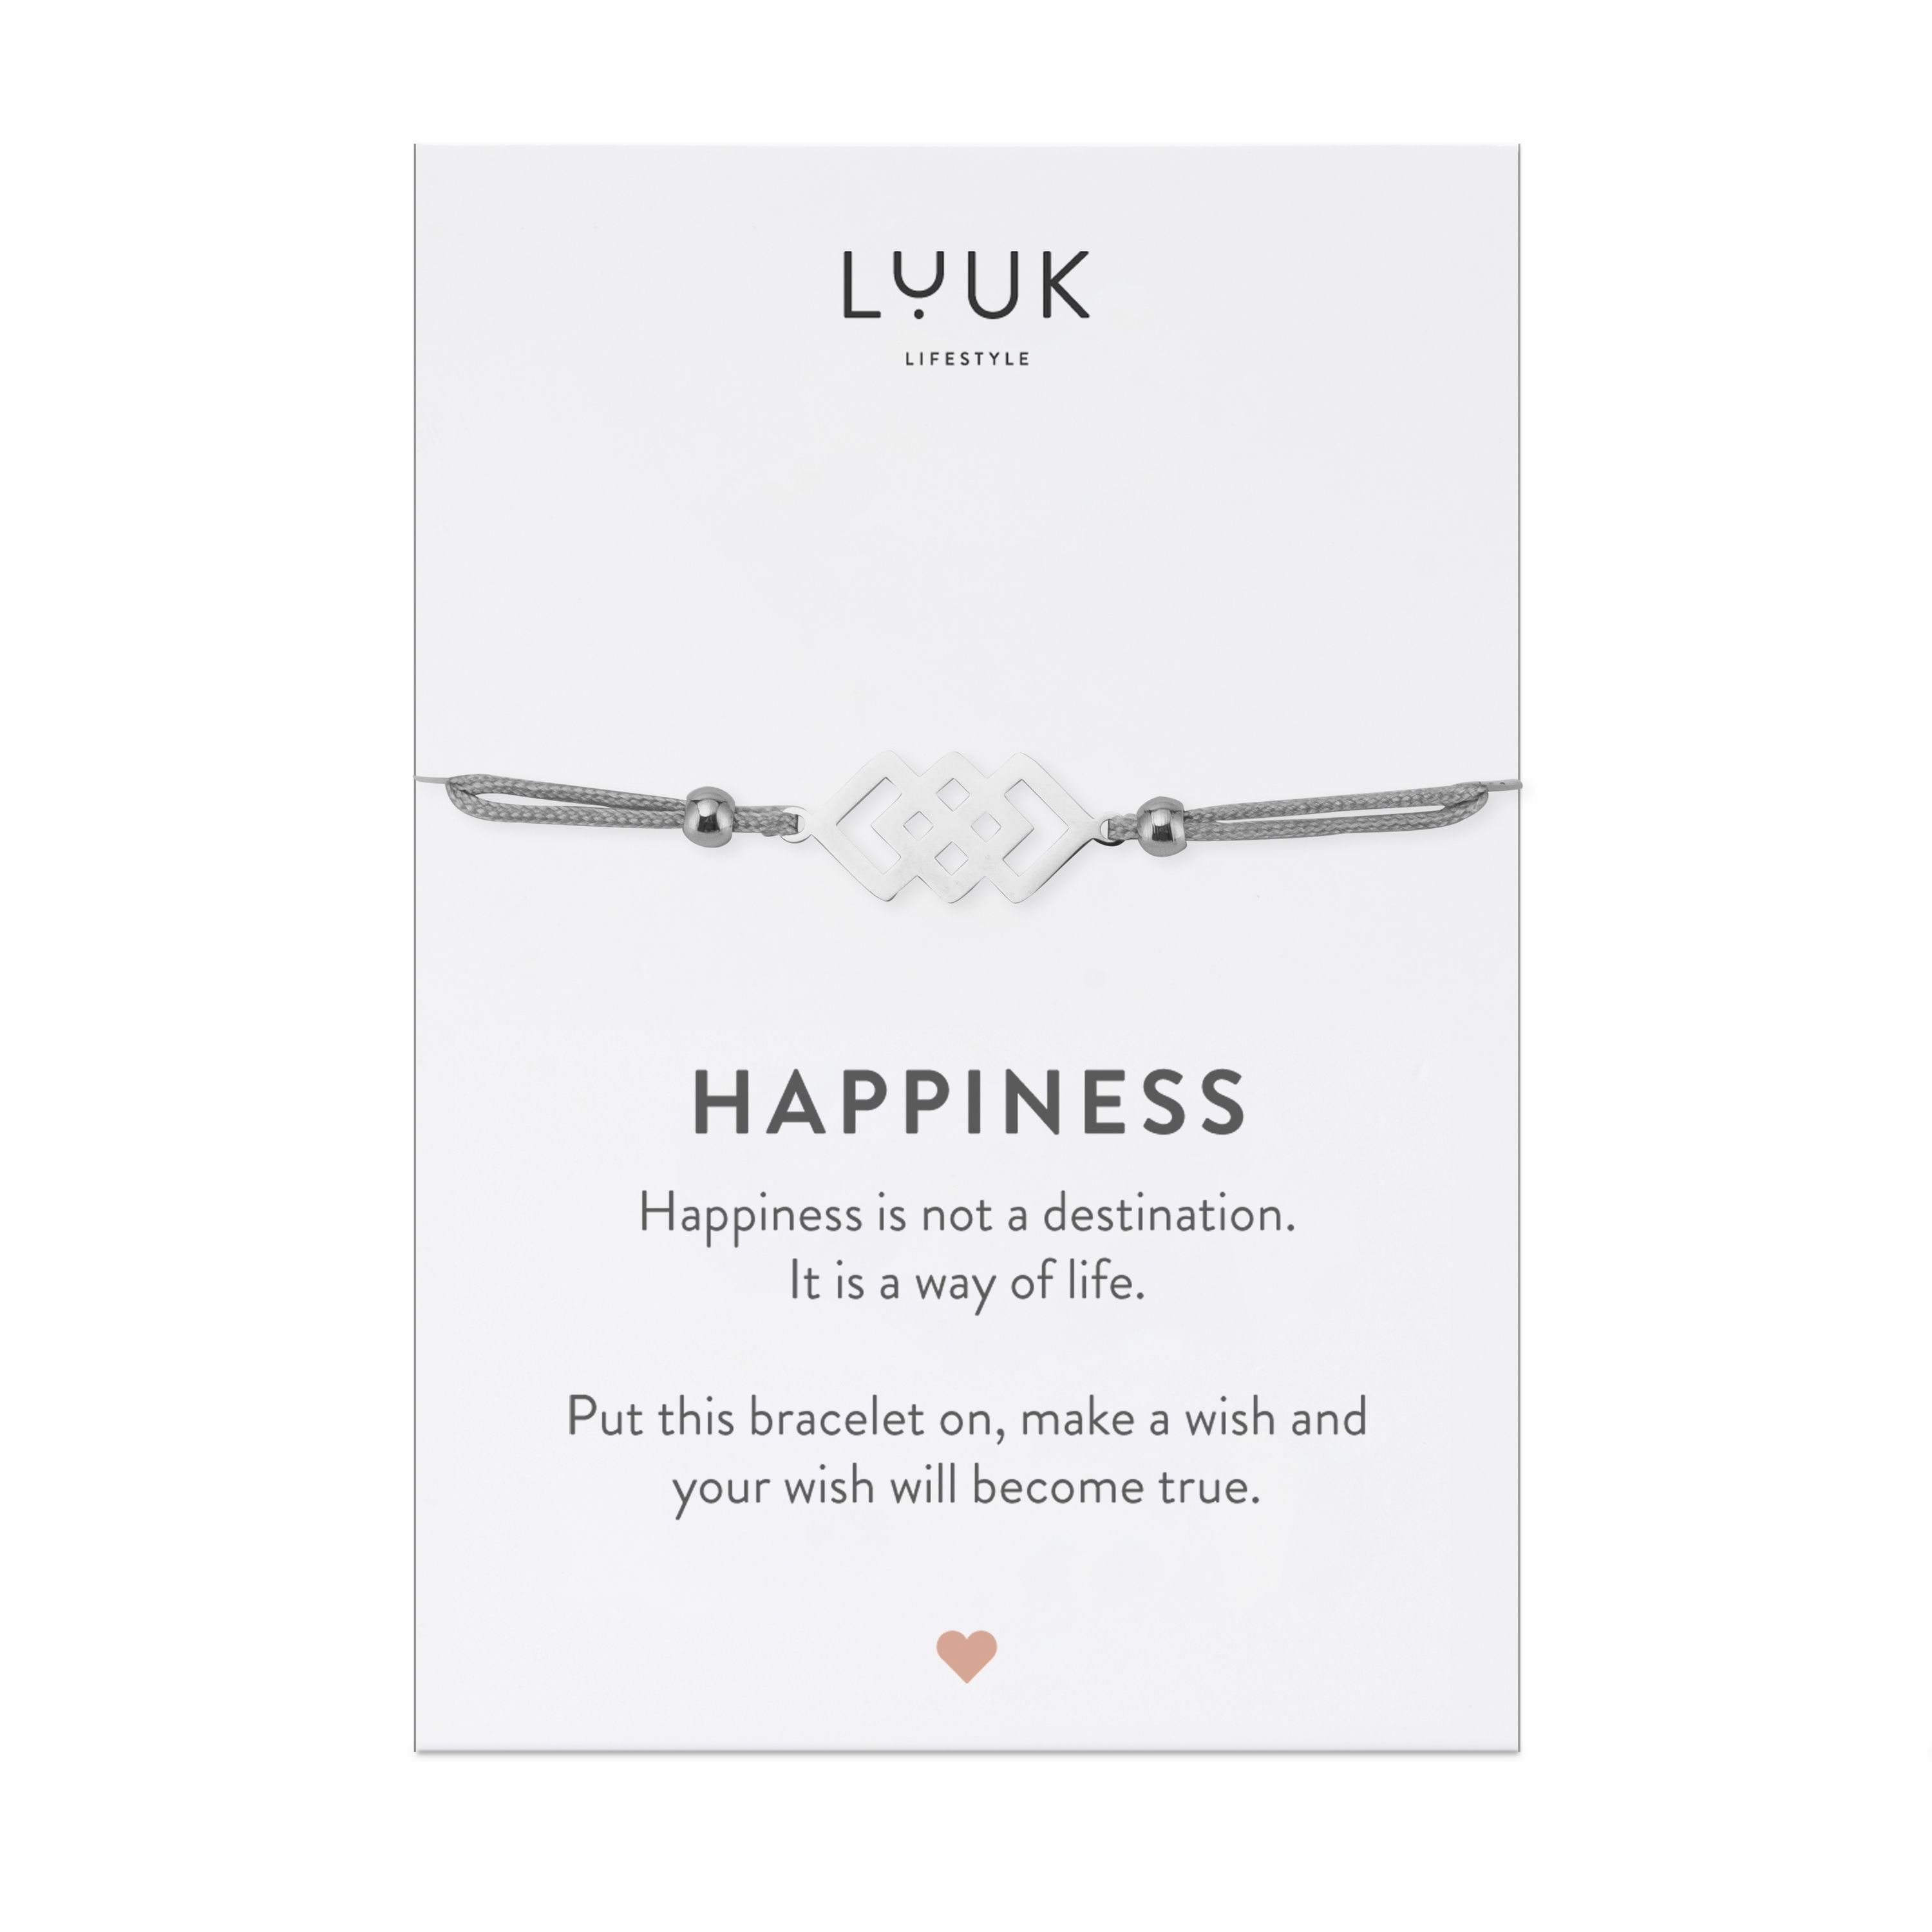 LIFESTYLE mit Happiness Freundschaftsarmband Spruchkarte Silber verschlungene handmade, Quadrate, LUUK